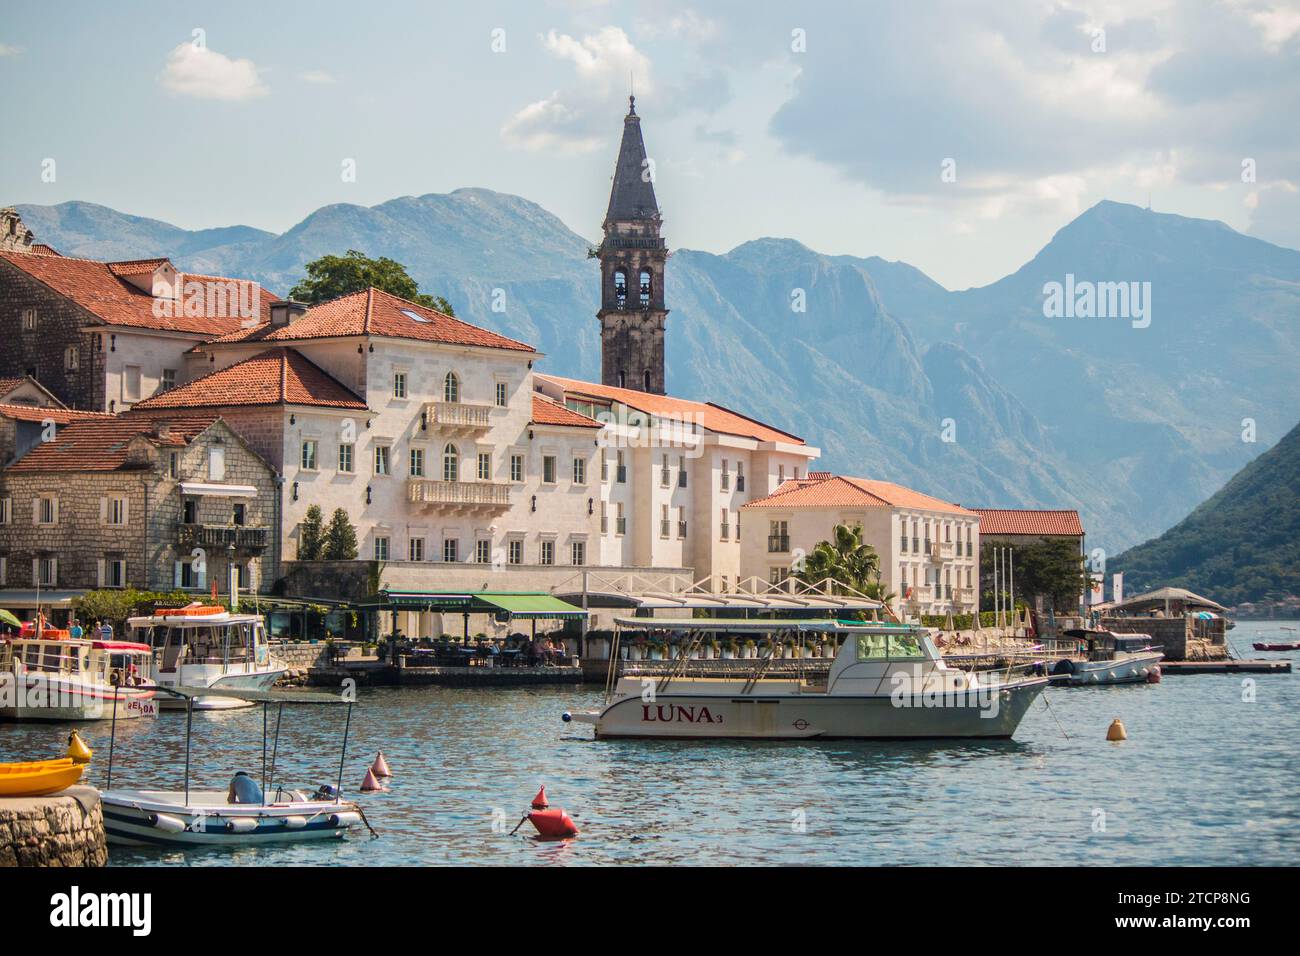 Blick auf die UNESCO-geschützte Stadt Perast mit der Bucht von Kotor, die sich in Richtung Kotor, Montenegro, erstreckt Stockfoto